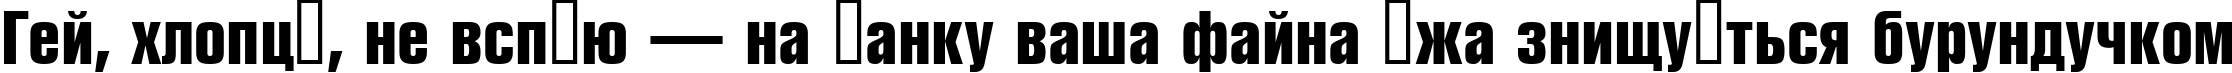 Пример написания шрифтом a_RubricaCn Bold текста на украинском